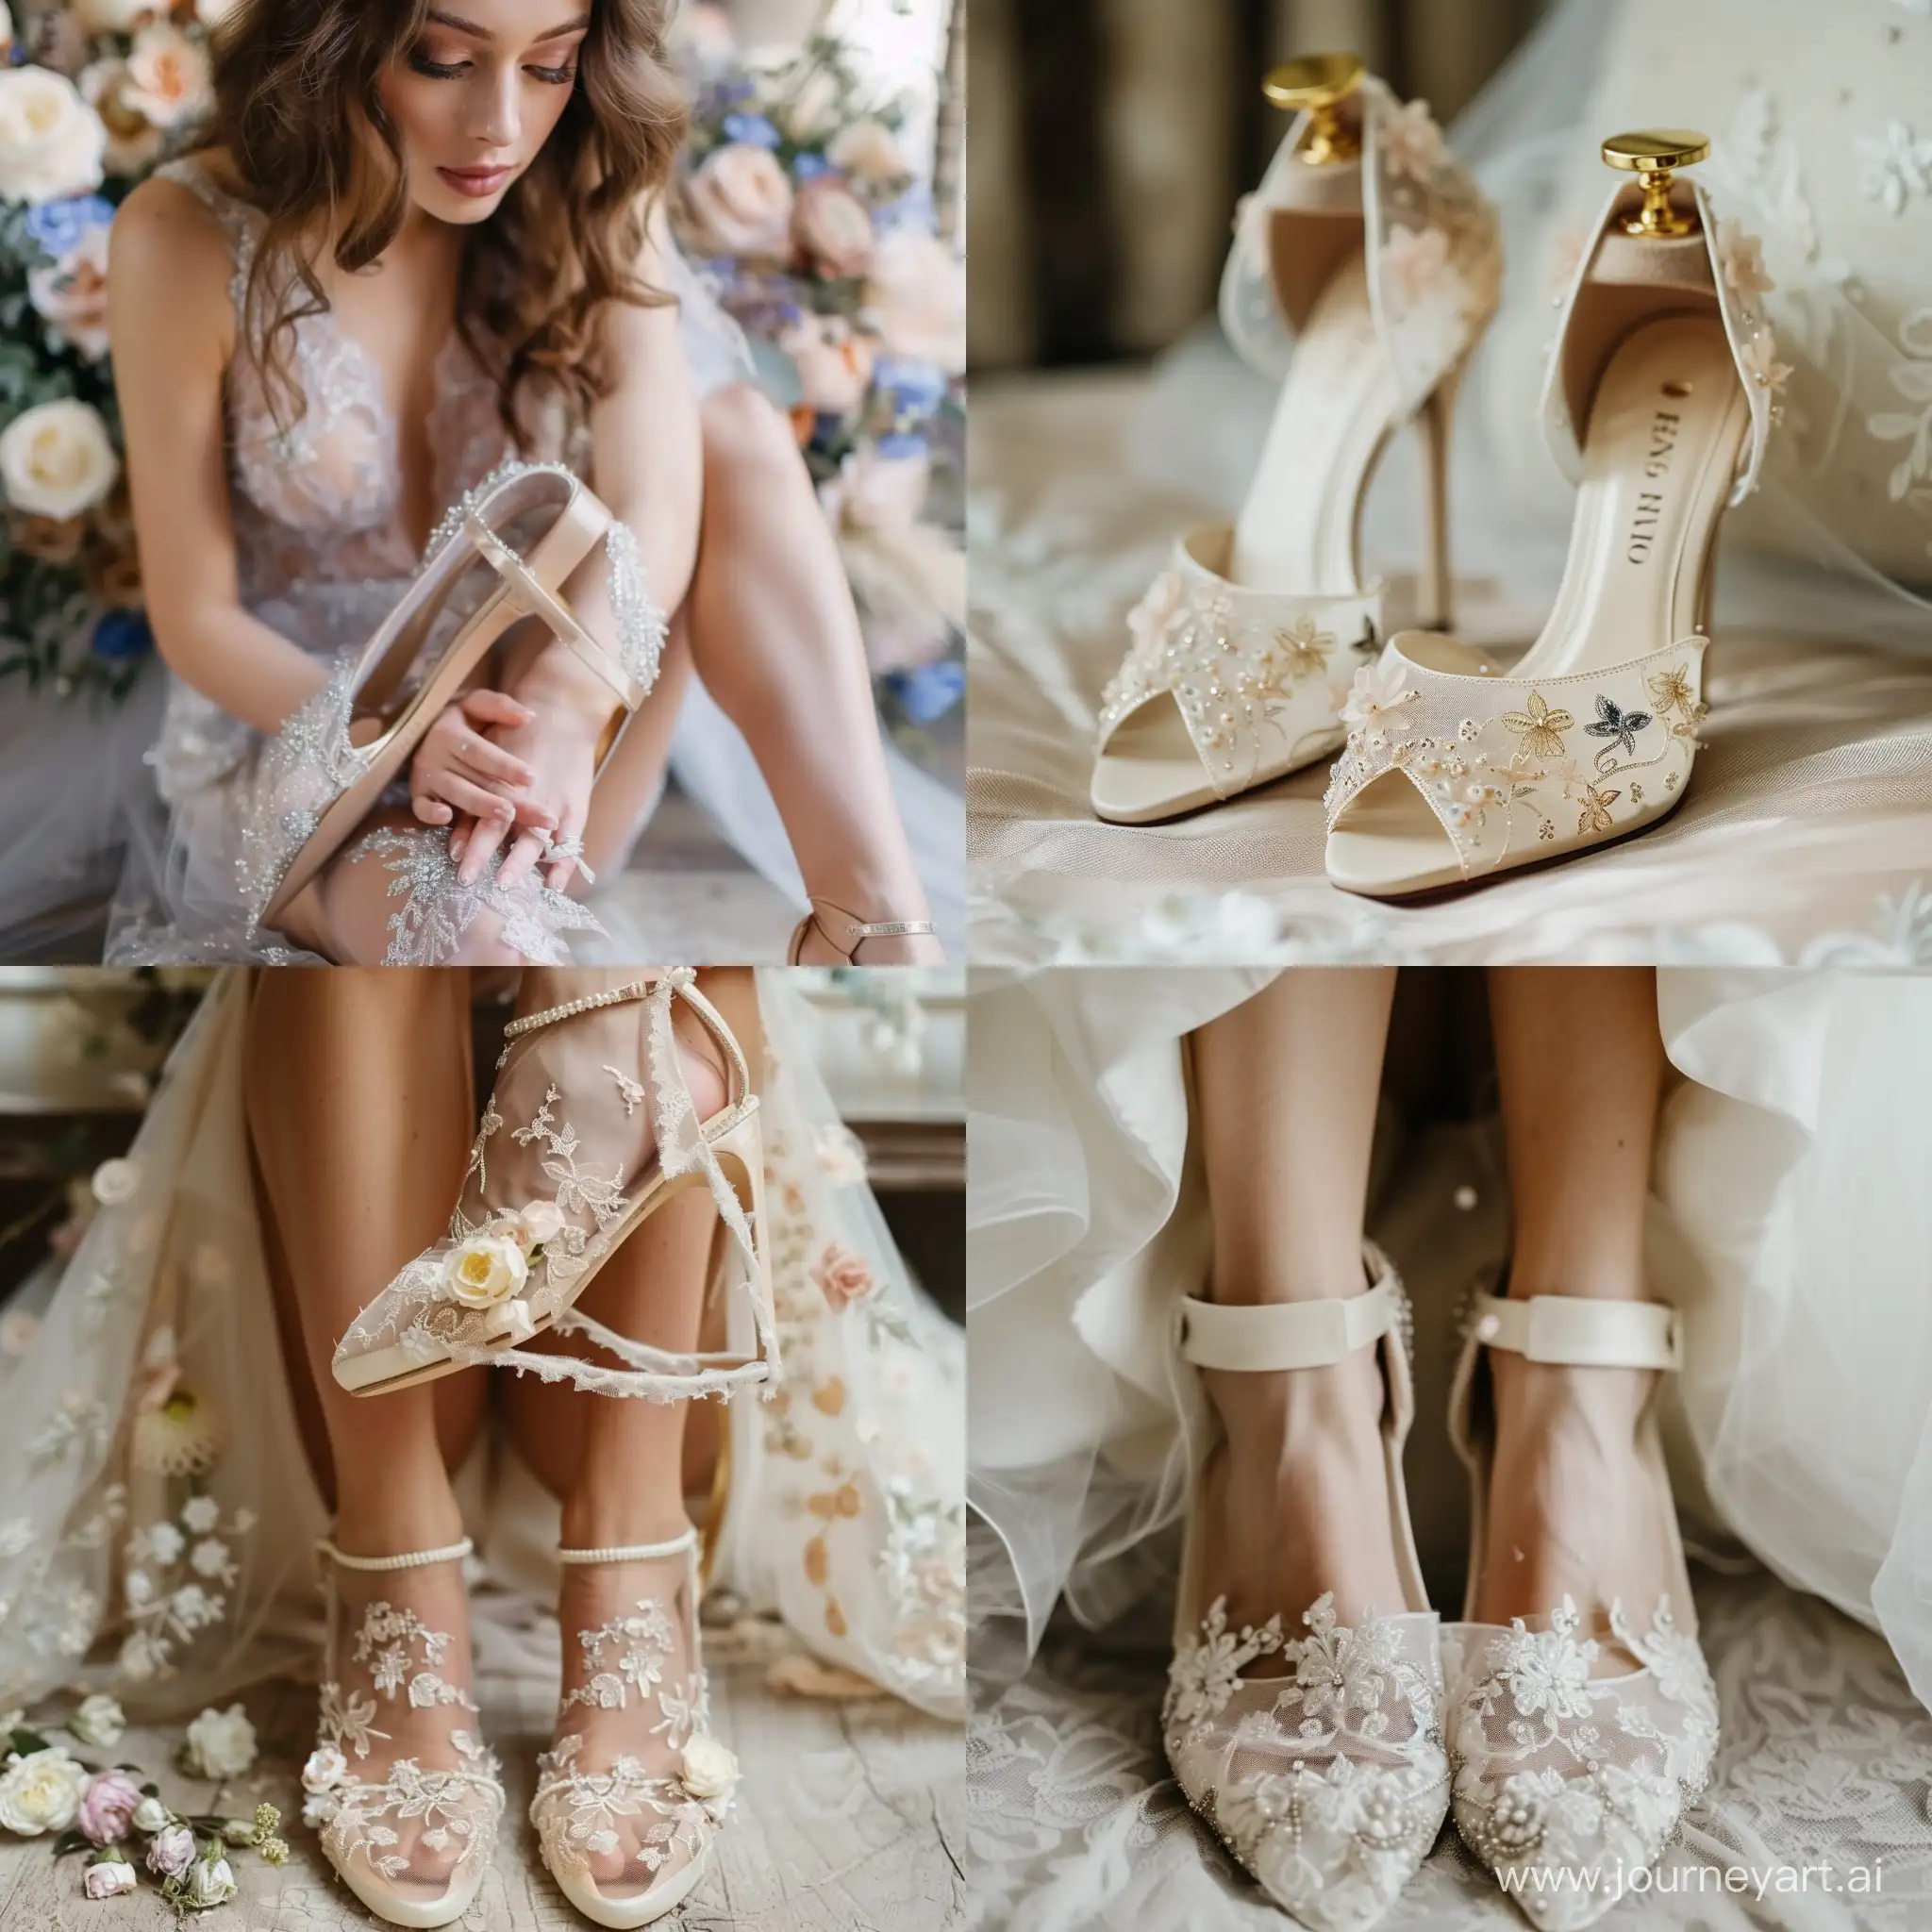 A dreamy bride shoes